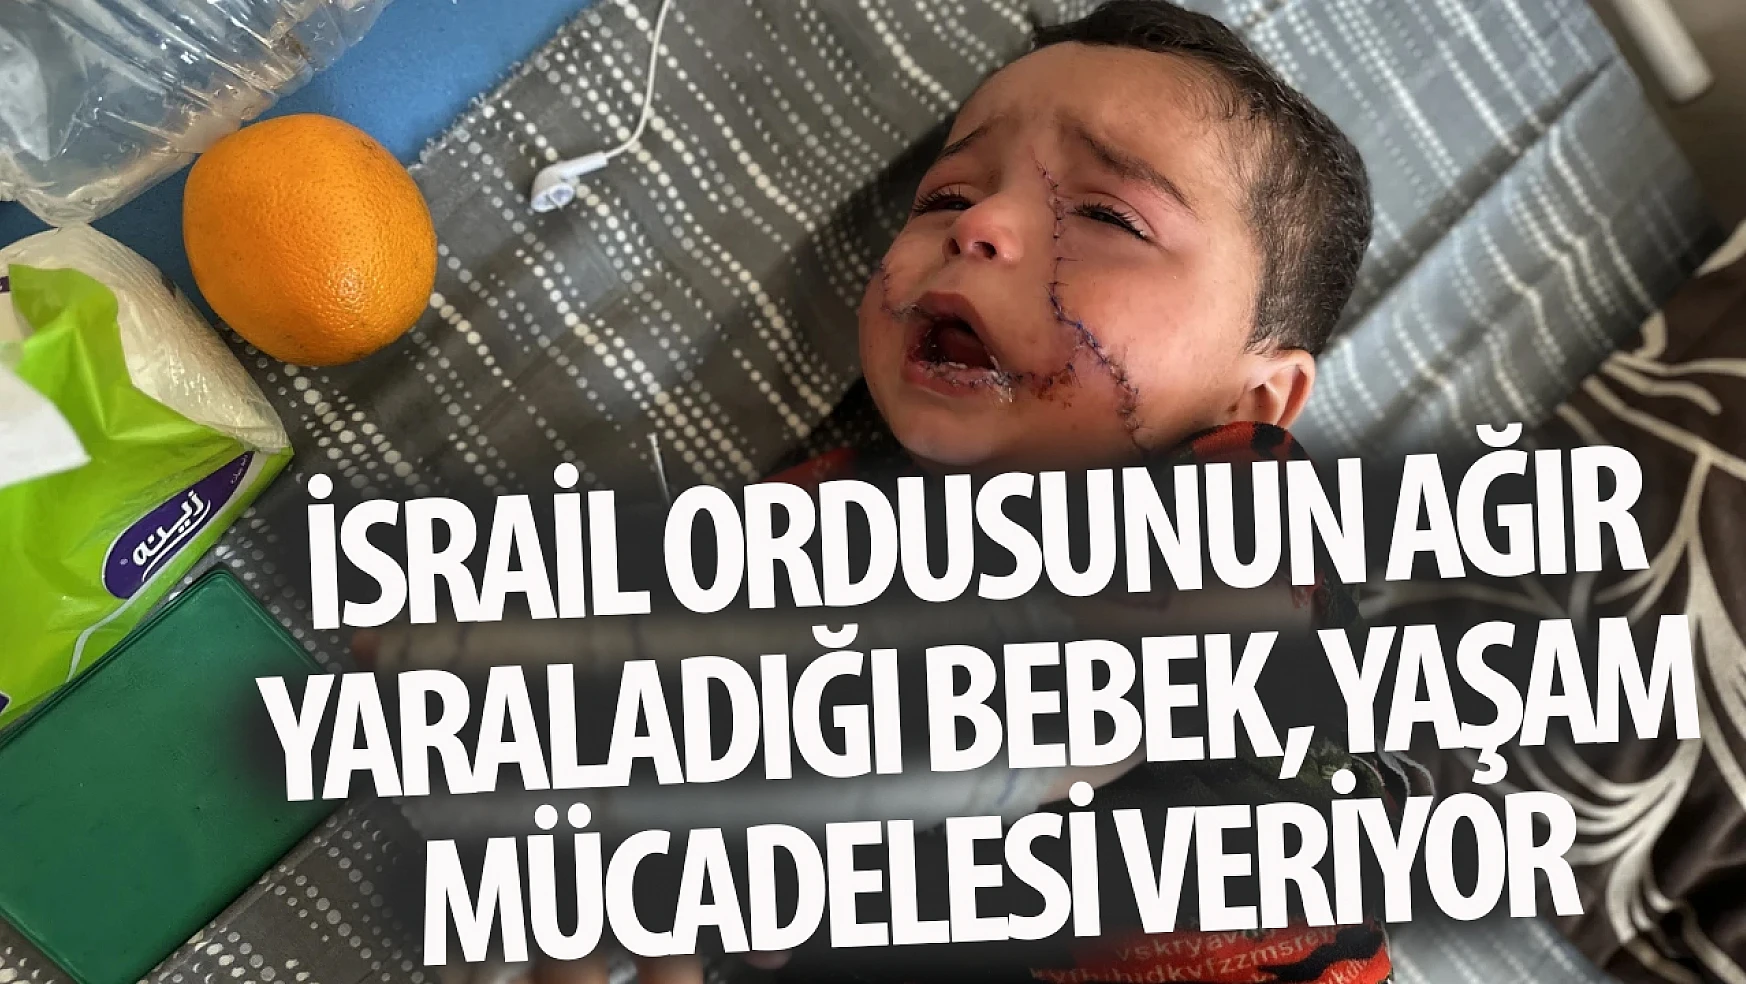 İsrail ordusunun ağır yaraladığı bebek, yaşam mücadelesi veriyor